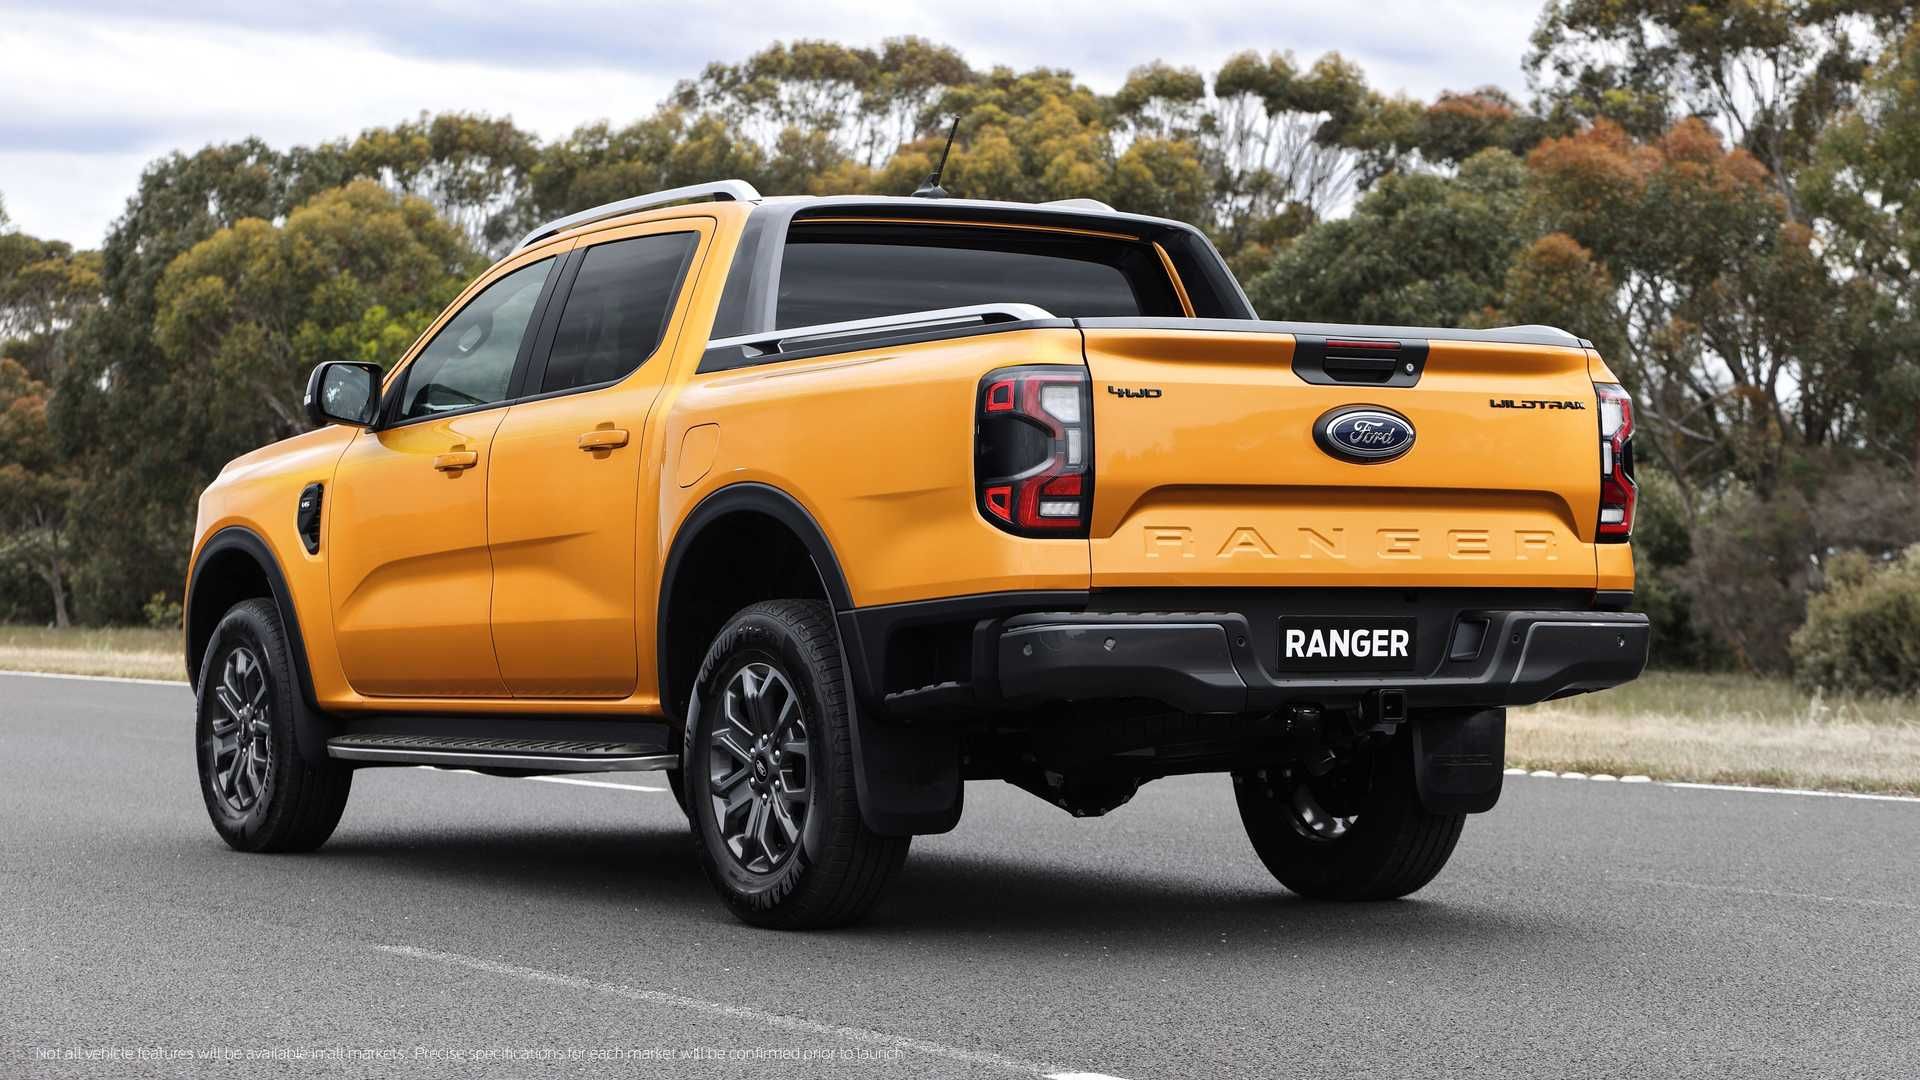 Ford Ranger седьмого поколения представлен официально 2